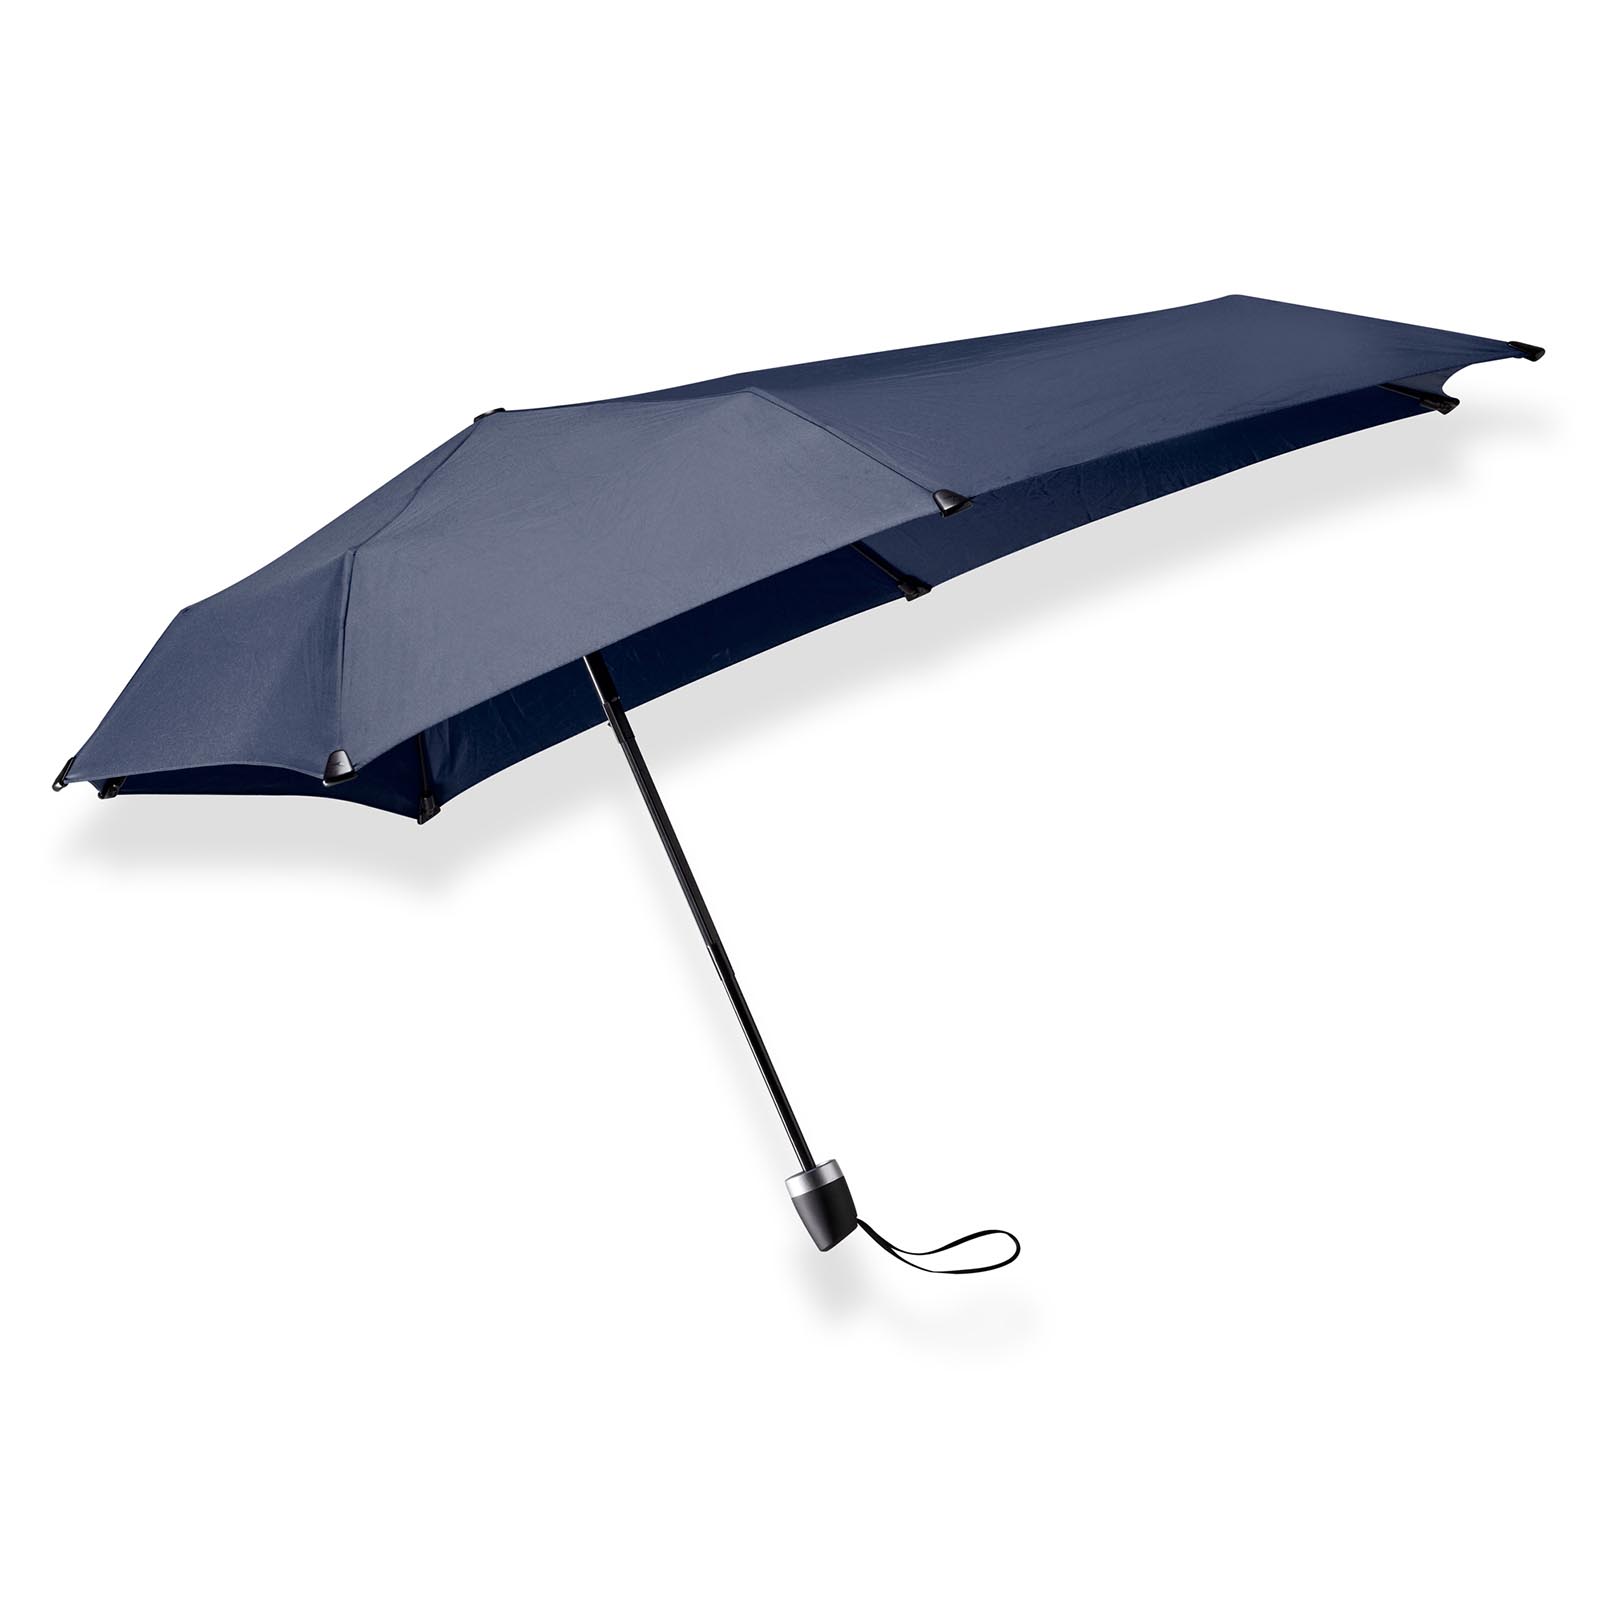 Aan het leren alarm Verhandeling Blauwe opvouwbare paraplu mini kopen? senz° mini midnight blue